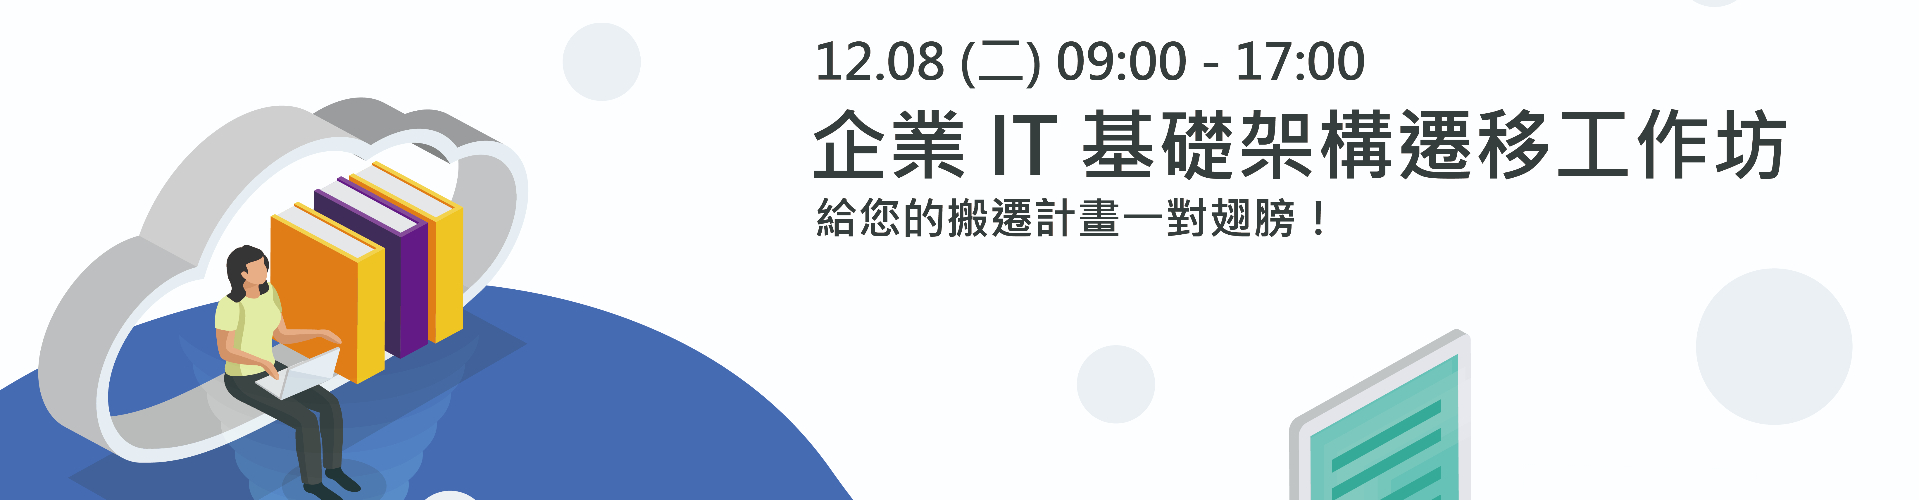 【實體研討會】12/8 企業 IT 基礎架構遷移工作坊